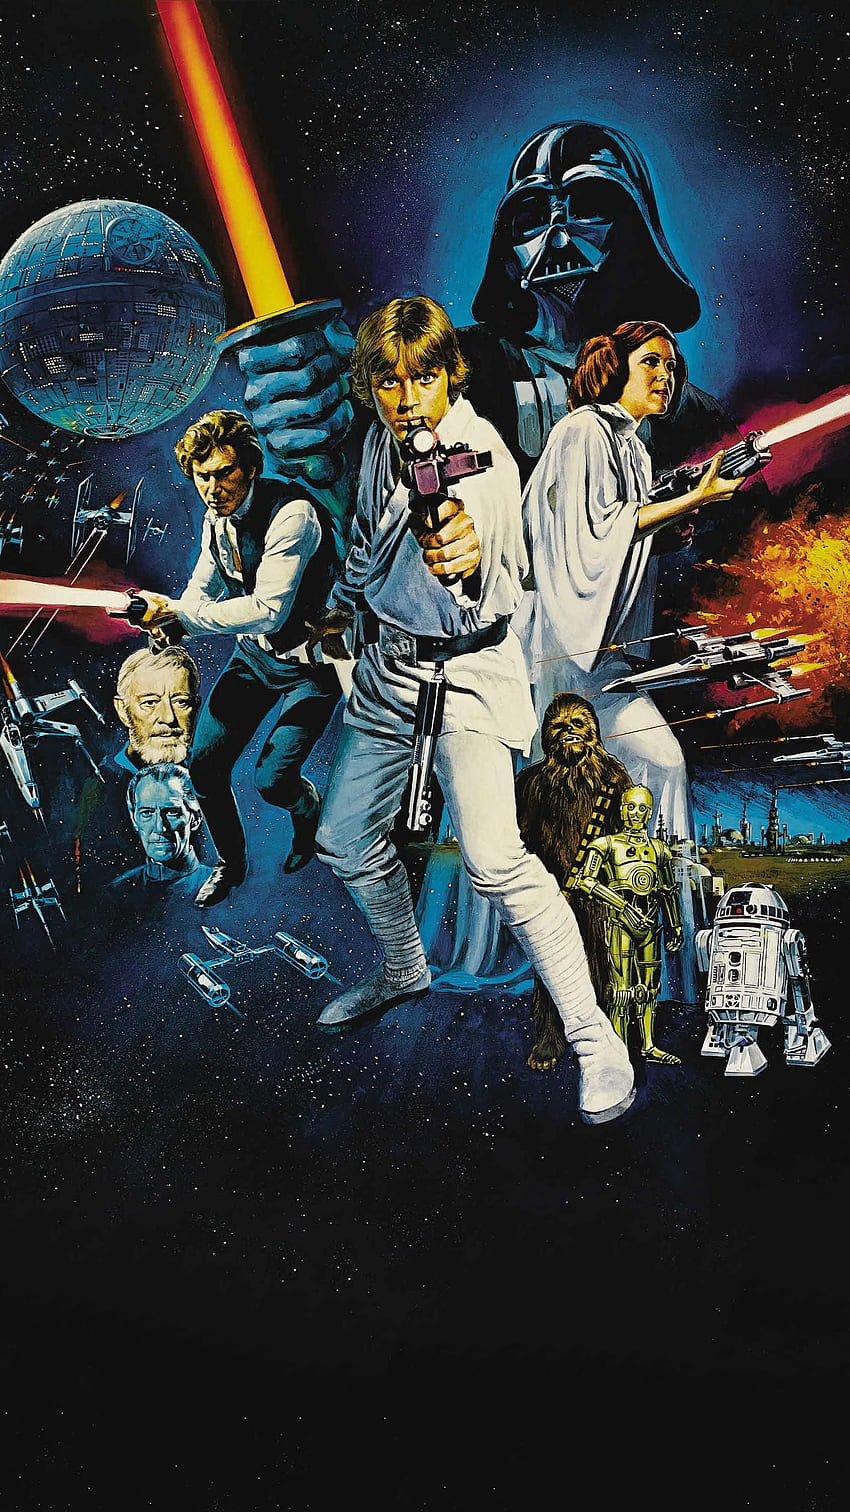 Star Wars (1977) Teléfono. Cinemanía. Carteles de películas de Star Wars, Episodios de Star Wars, Star Wars vintage, Star Wars 1977 fondo de pantalla del teléfono